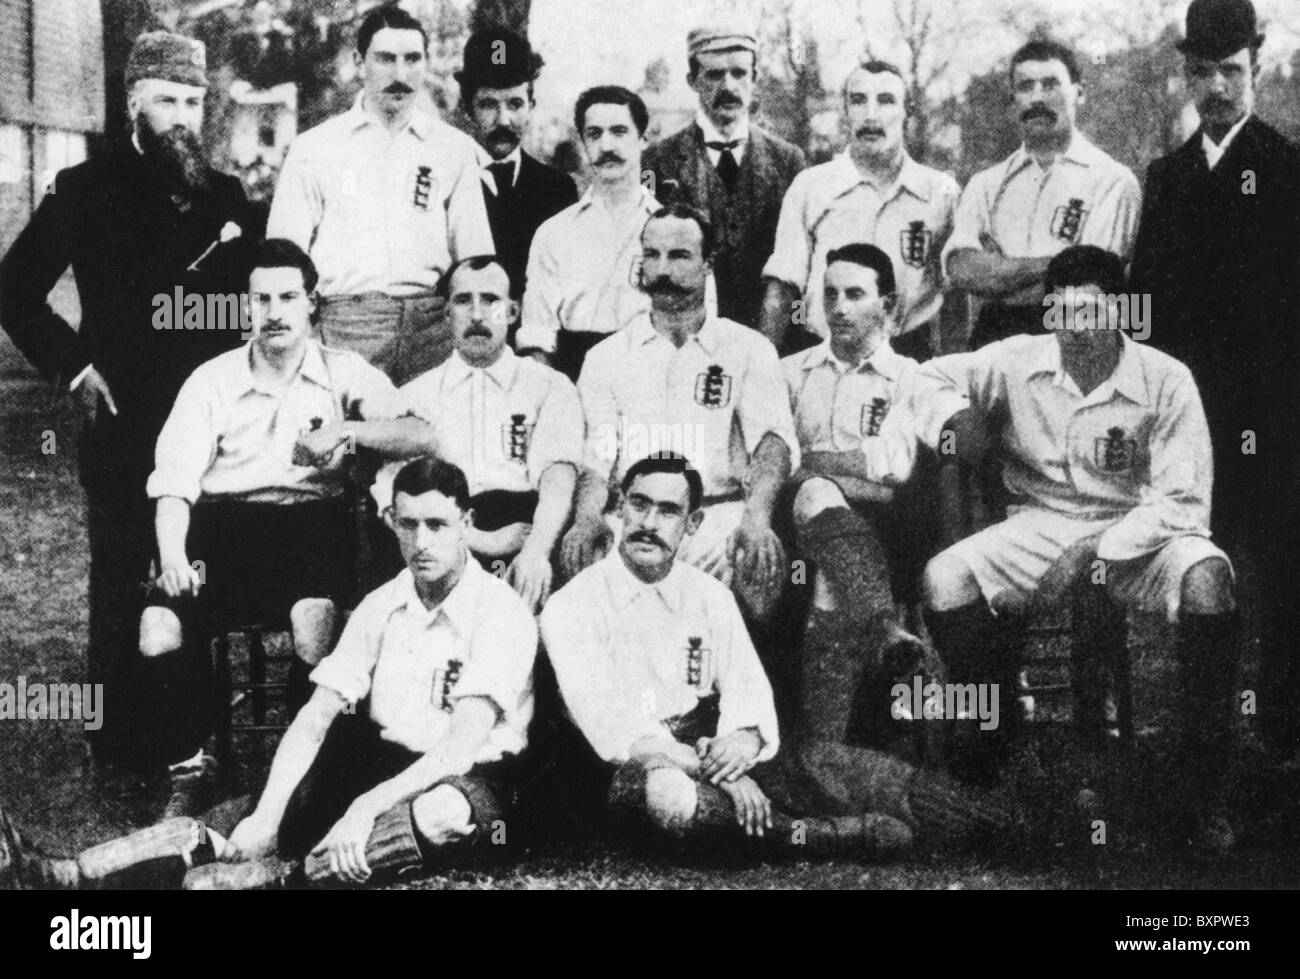 ENGLISCHE Fußball-Nationalmannschaft, die Schottland 5-2 in Richmond Athletic schlagen Boden 1. April 1893. Siehe Beschreibung unten Stockfoto